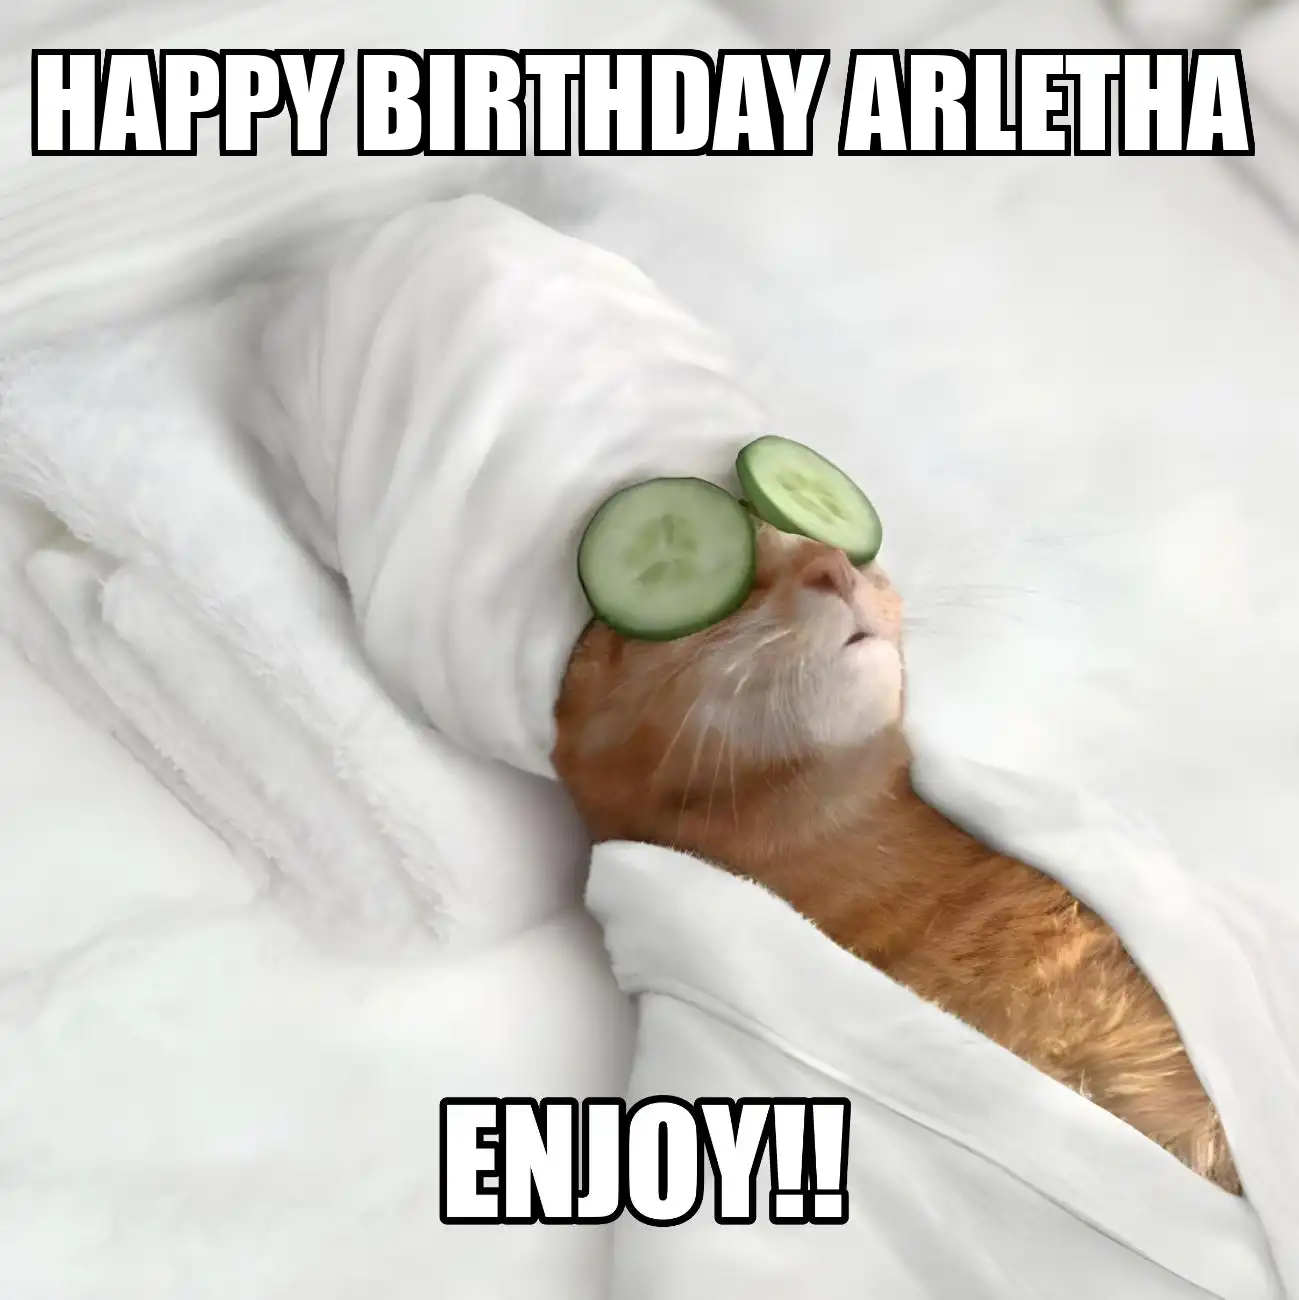 Happy Birthday Arletha Enjoy Cat Meme